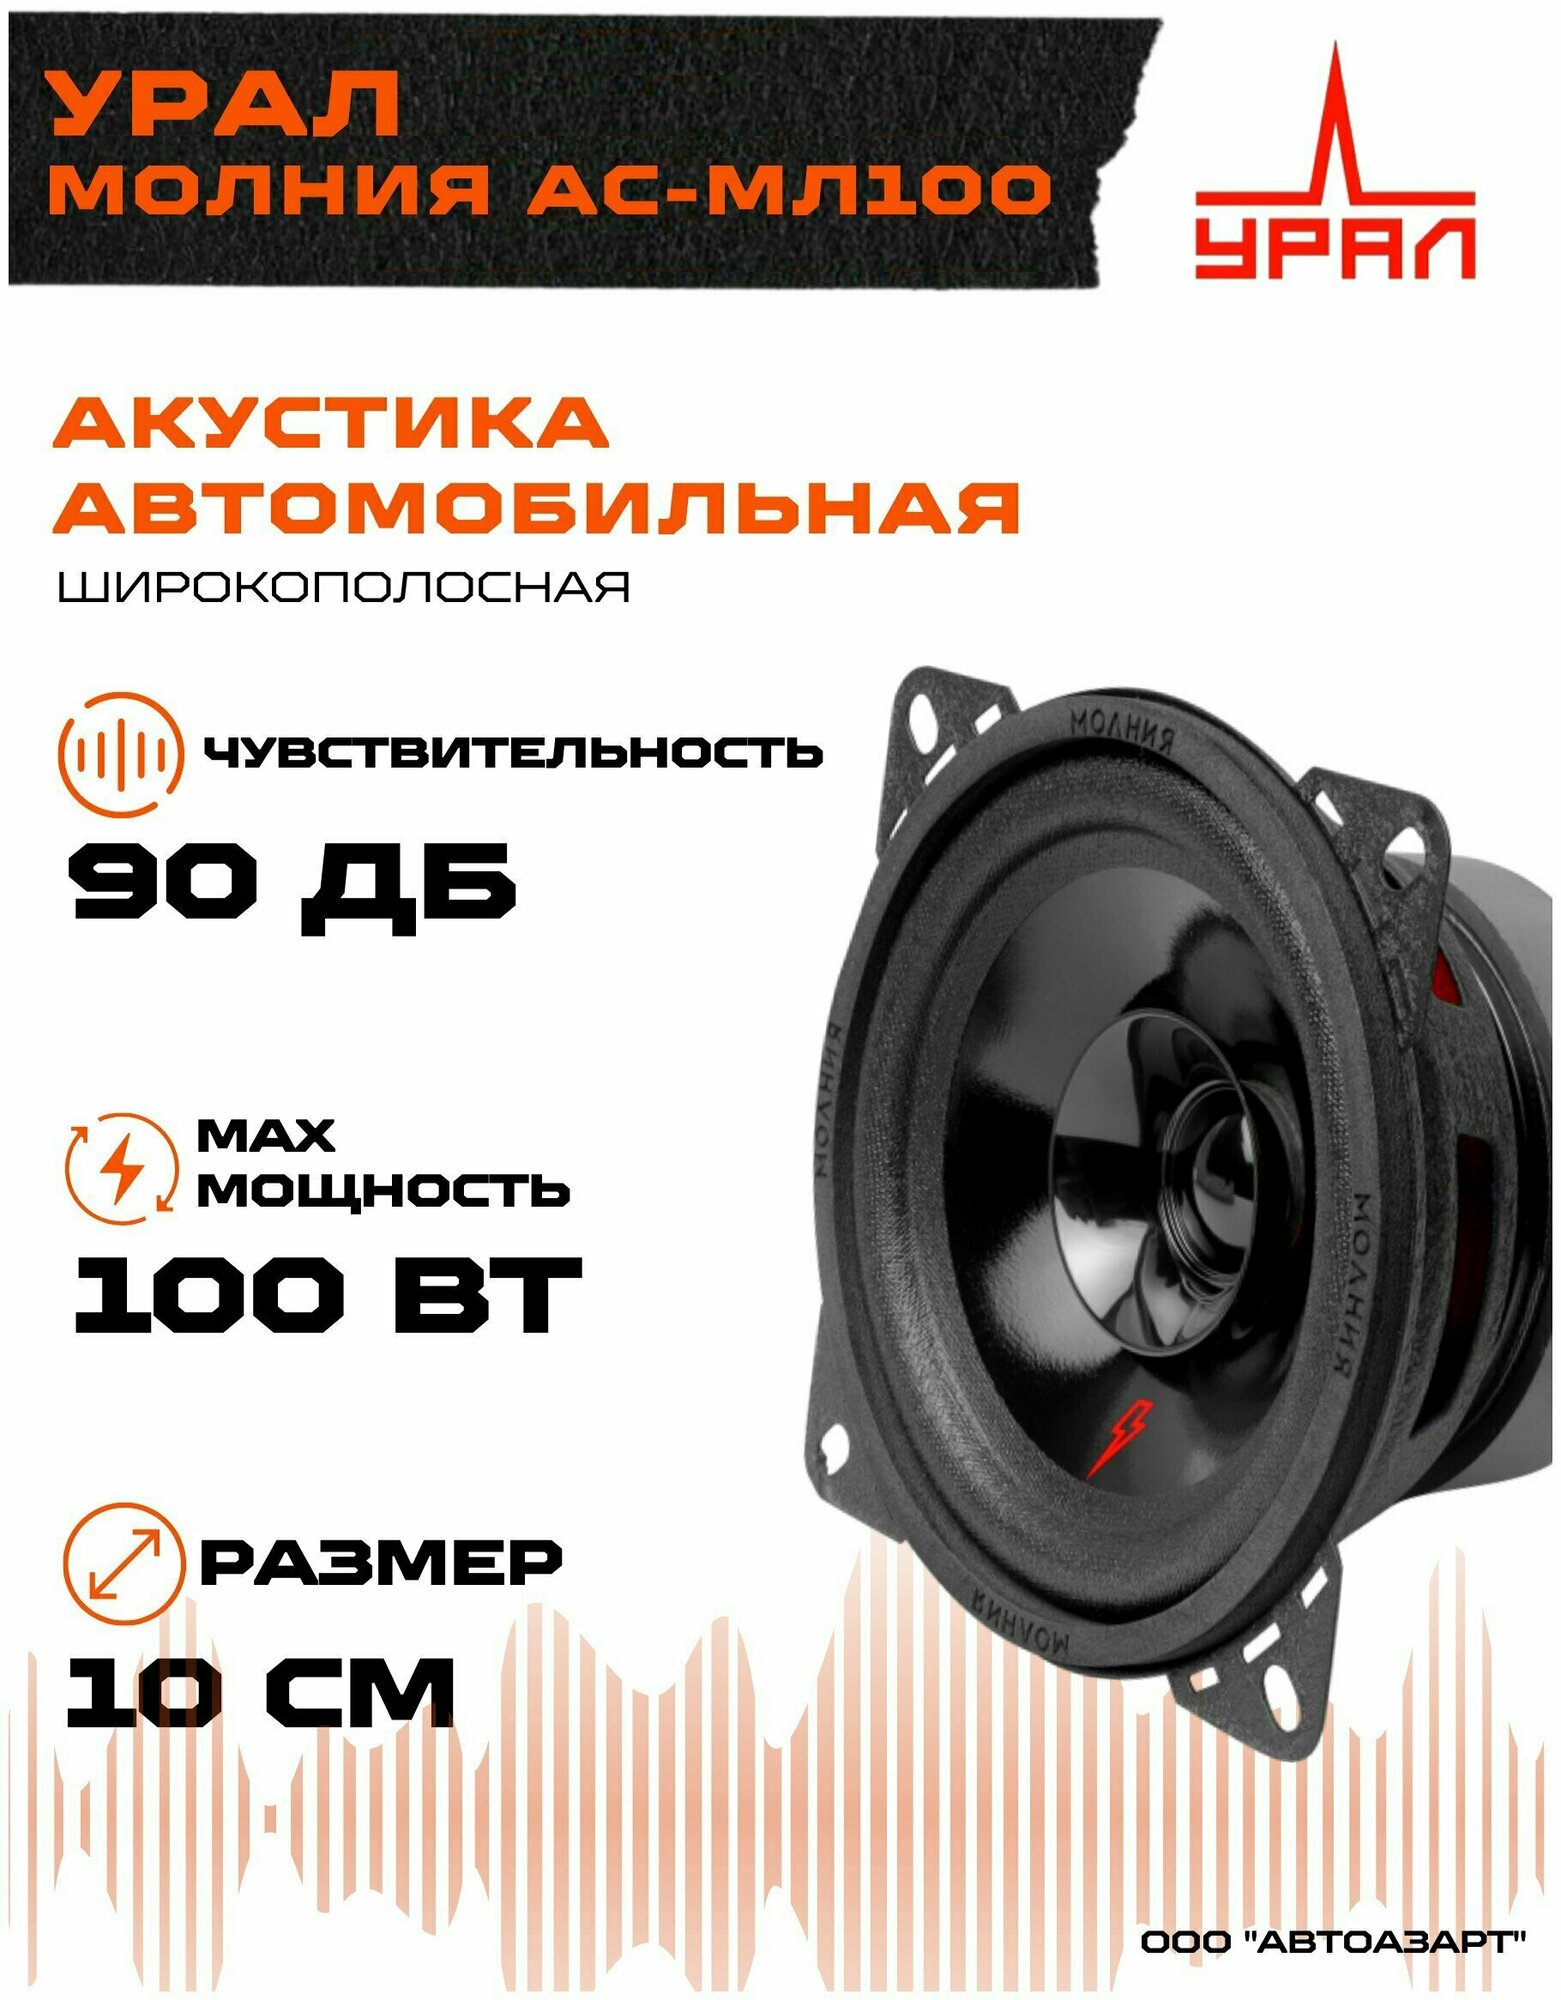 Колонки автомобильные Ural Молния АС-МЛ100 (ком:2кол.)